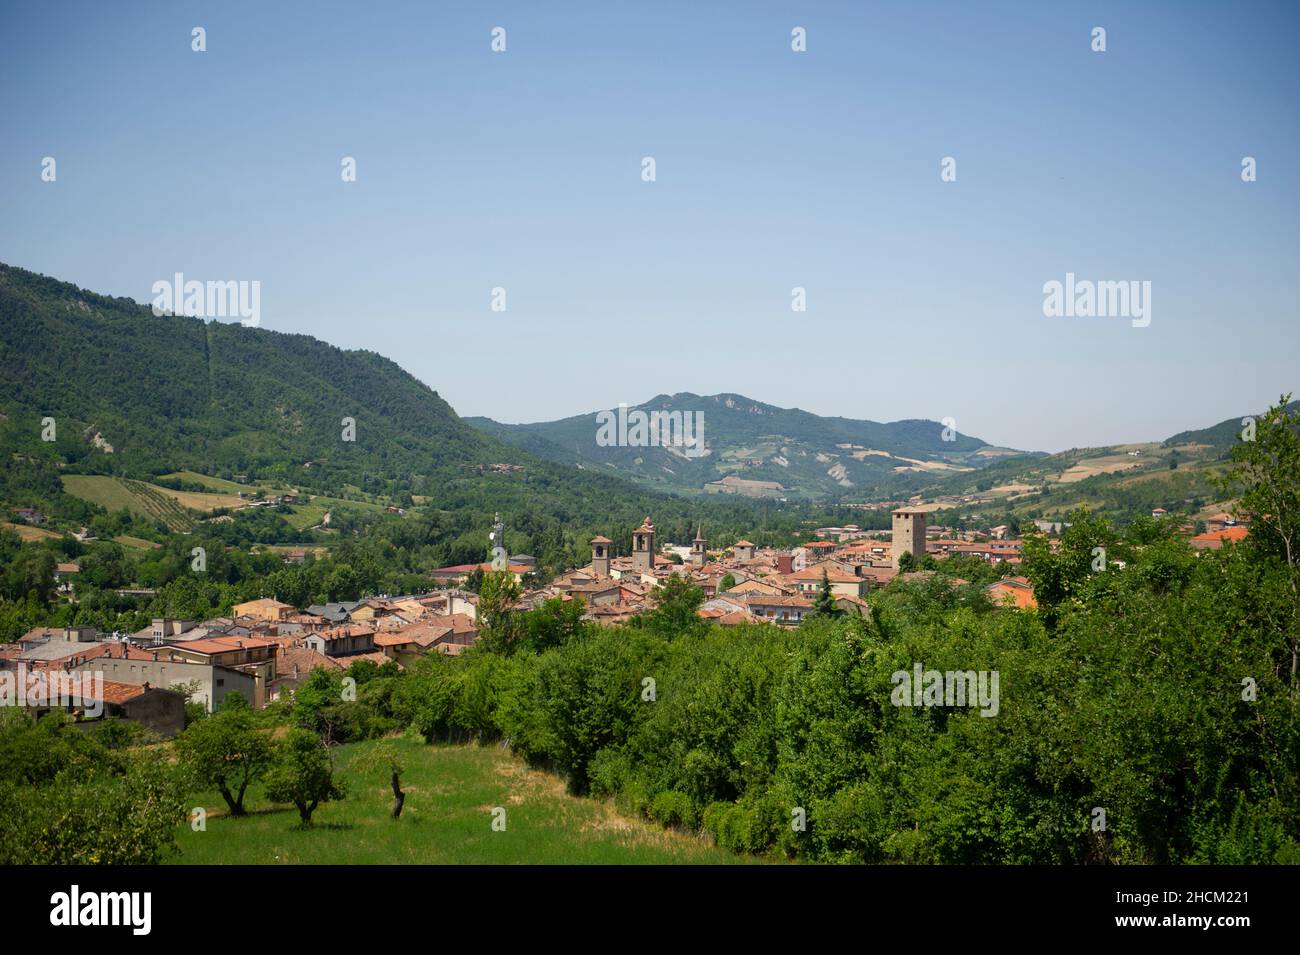 Europa, Italien, Lombardei, Pavia, Varzi, Ein mittelalterliches Dorf und Ort der Produktion von renommierten Wurstwaren Stockfoto